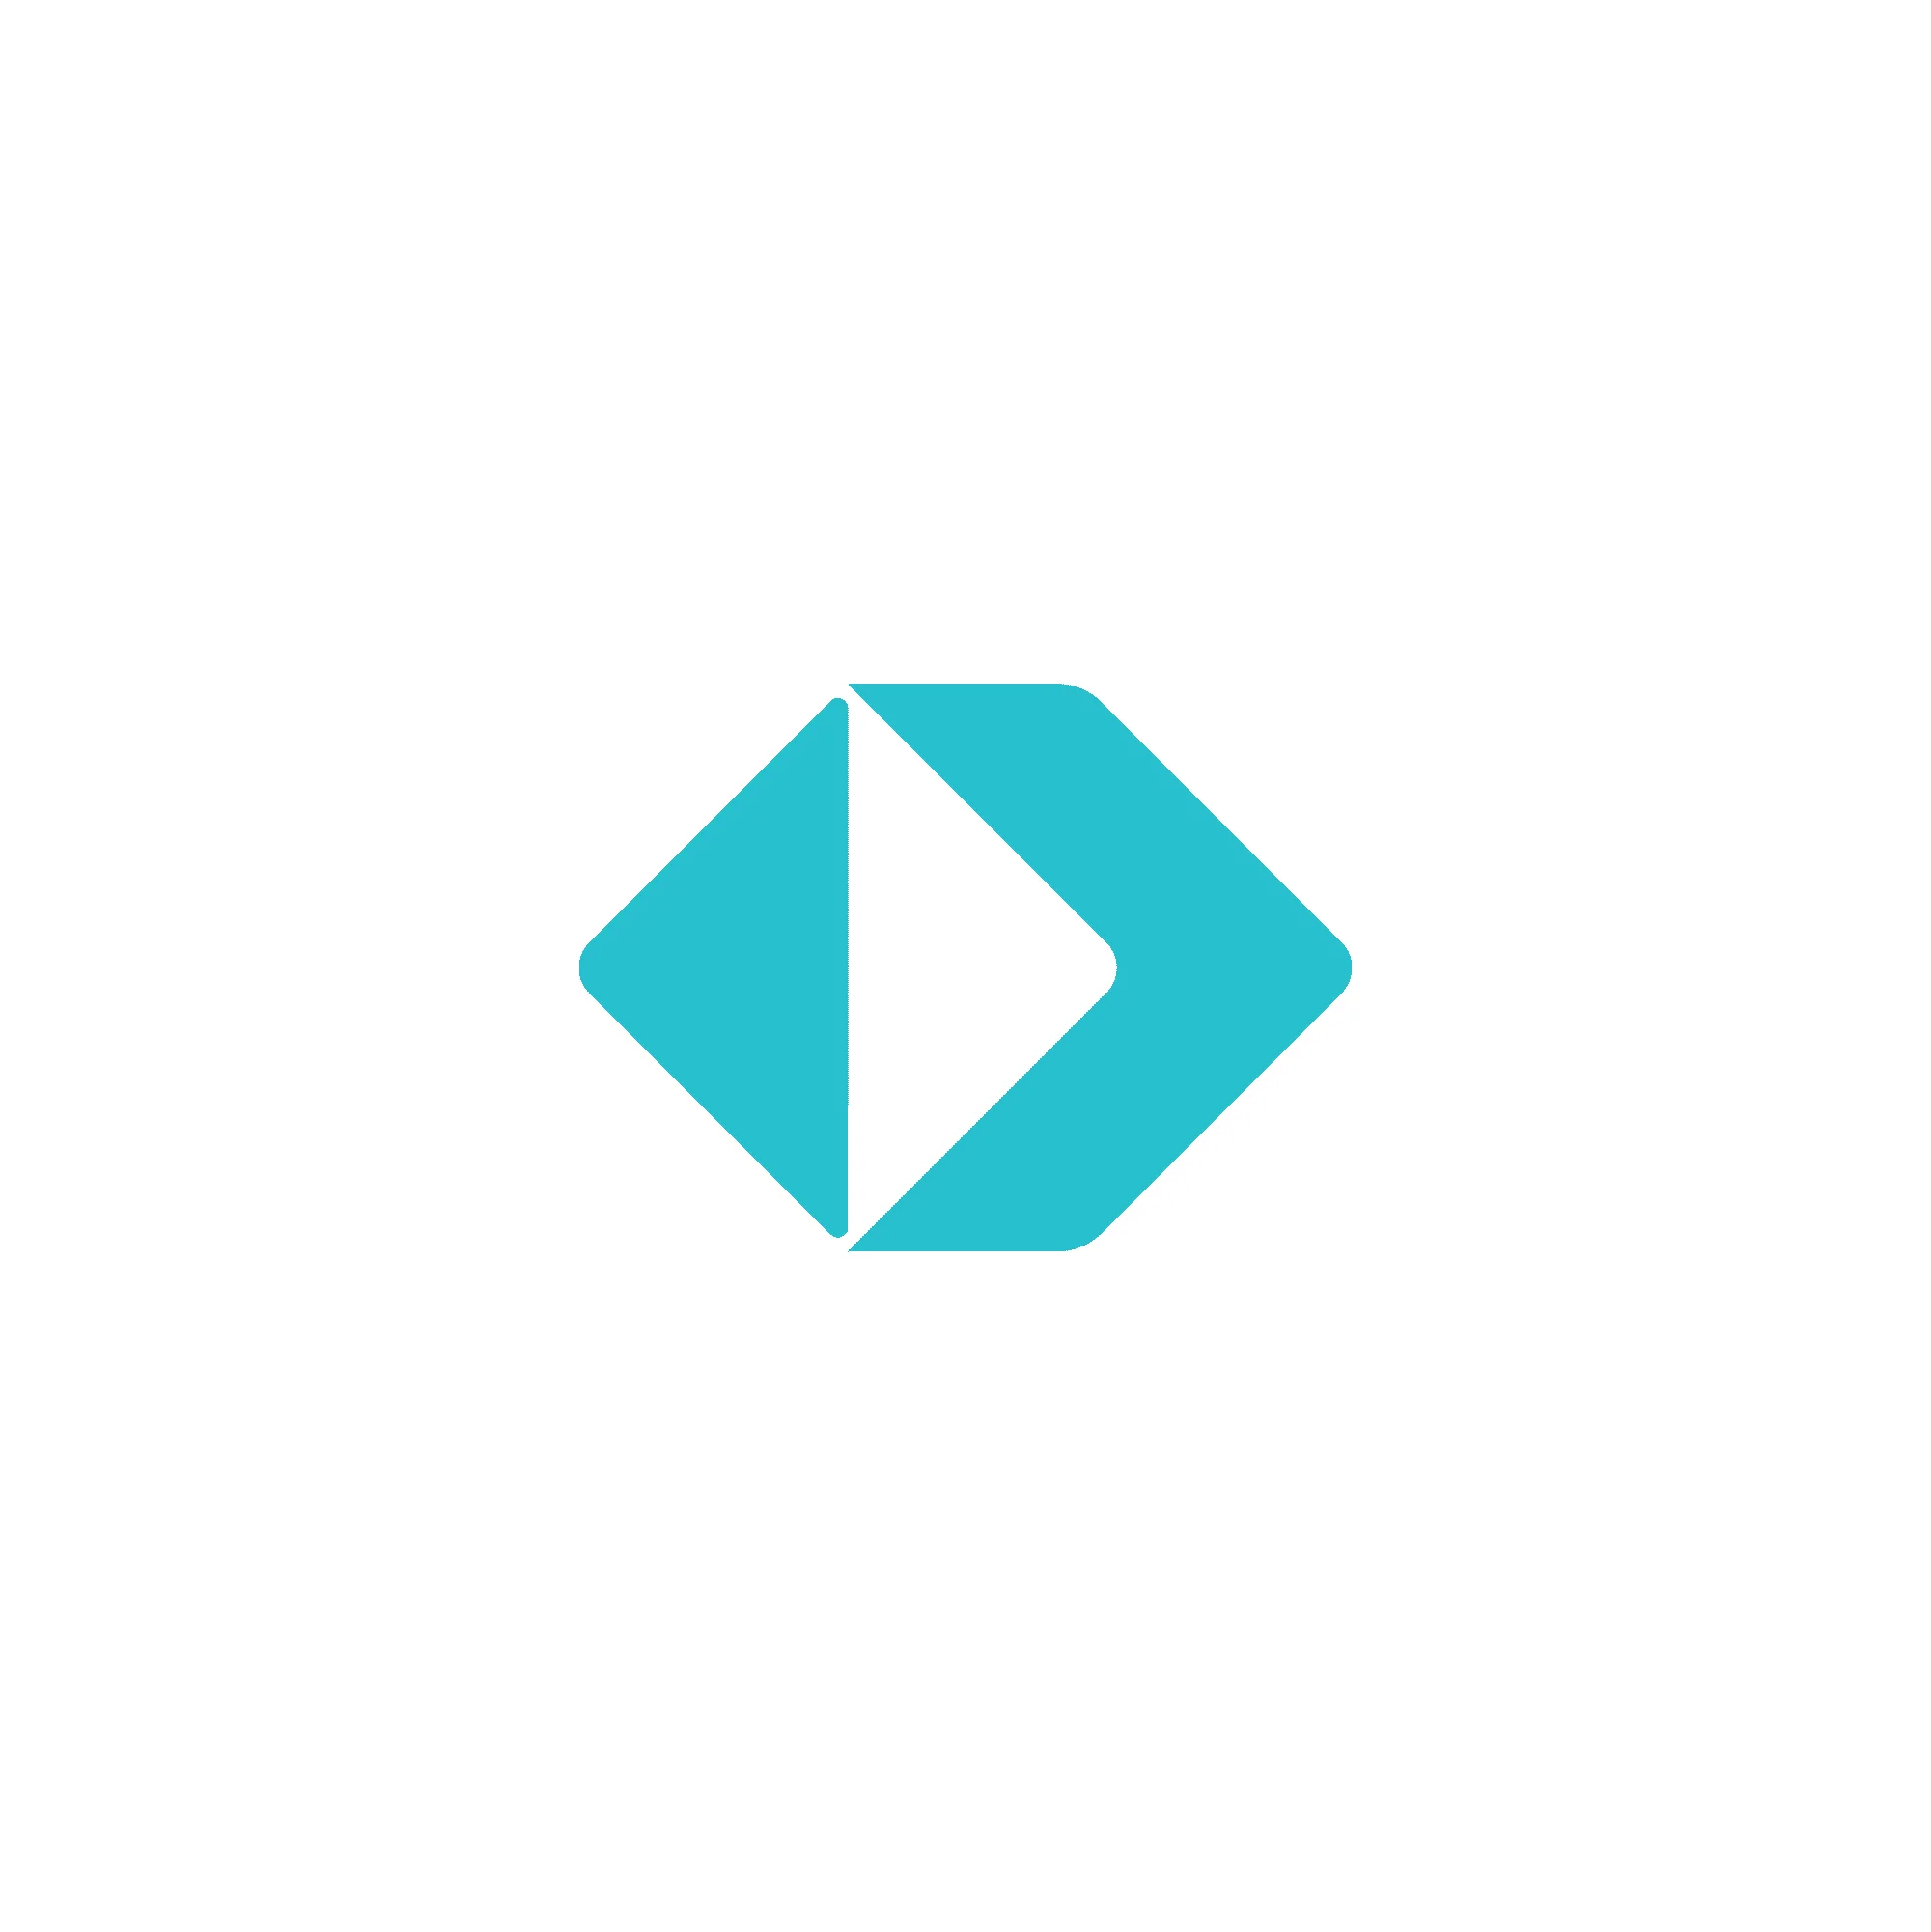 Branding Logo Design Triangle, arrow shape